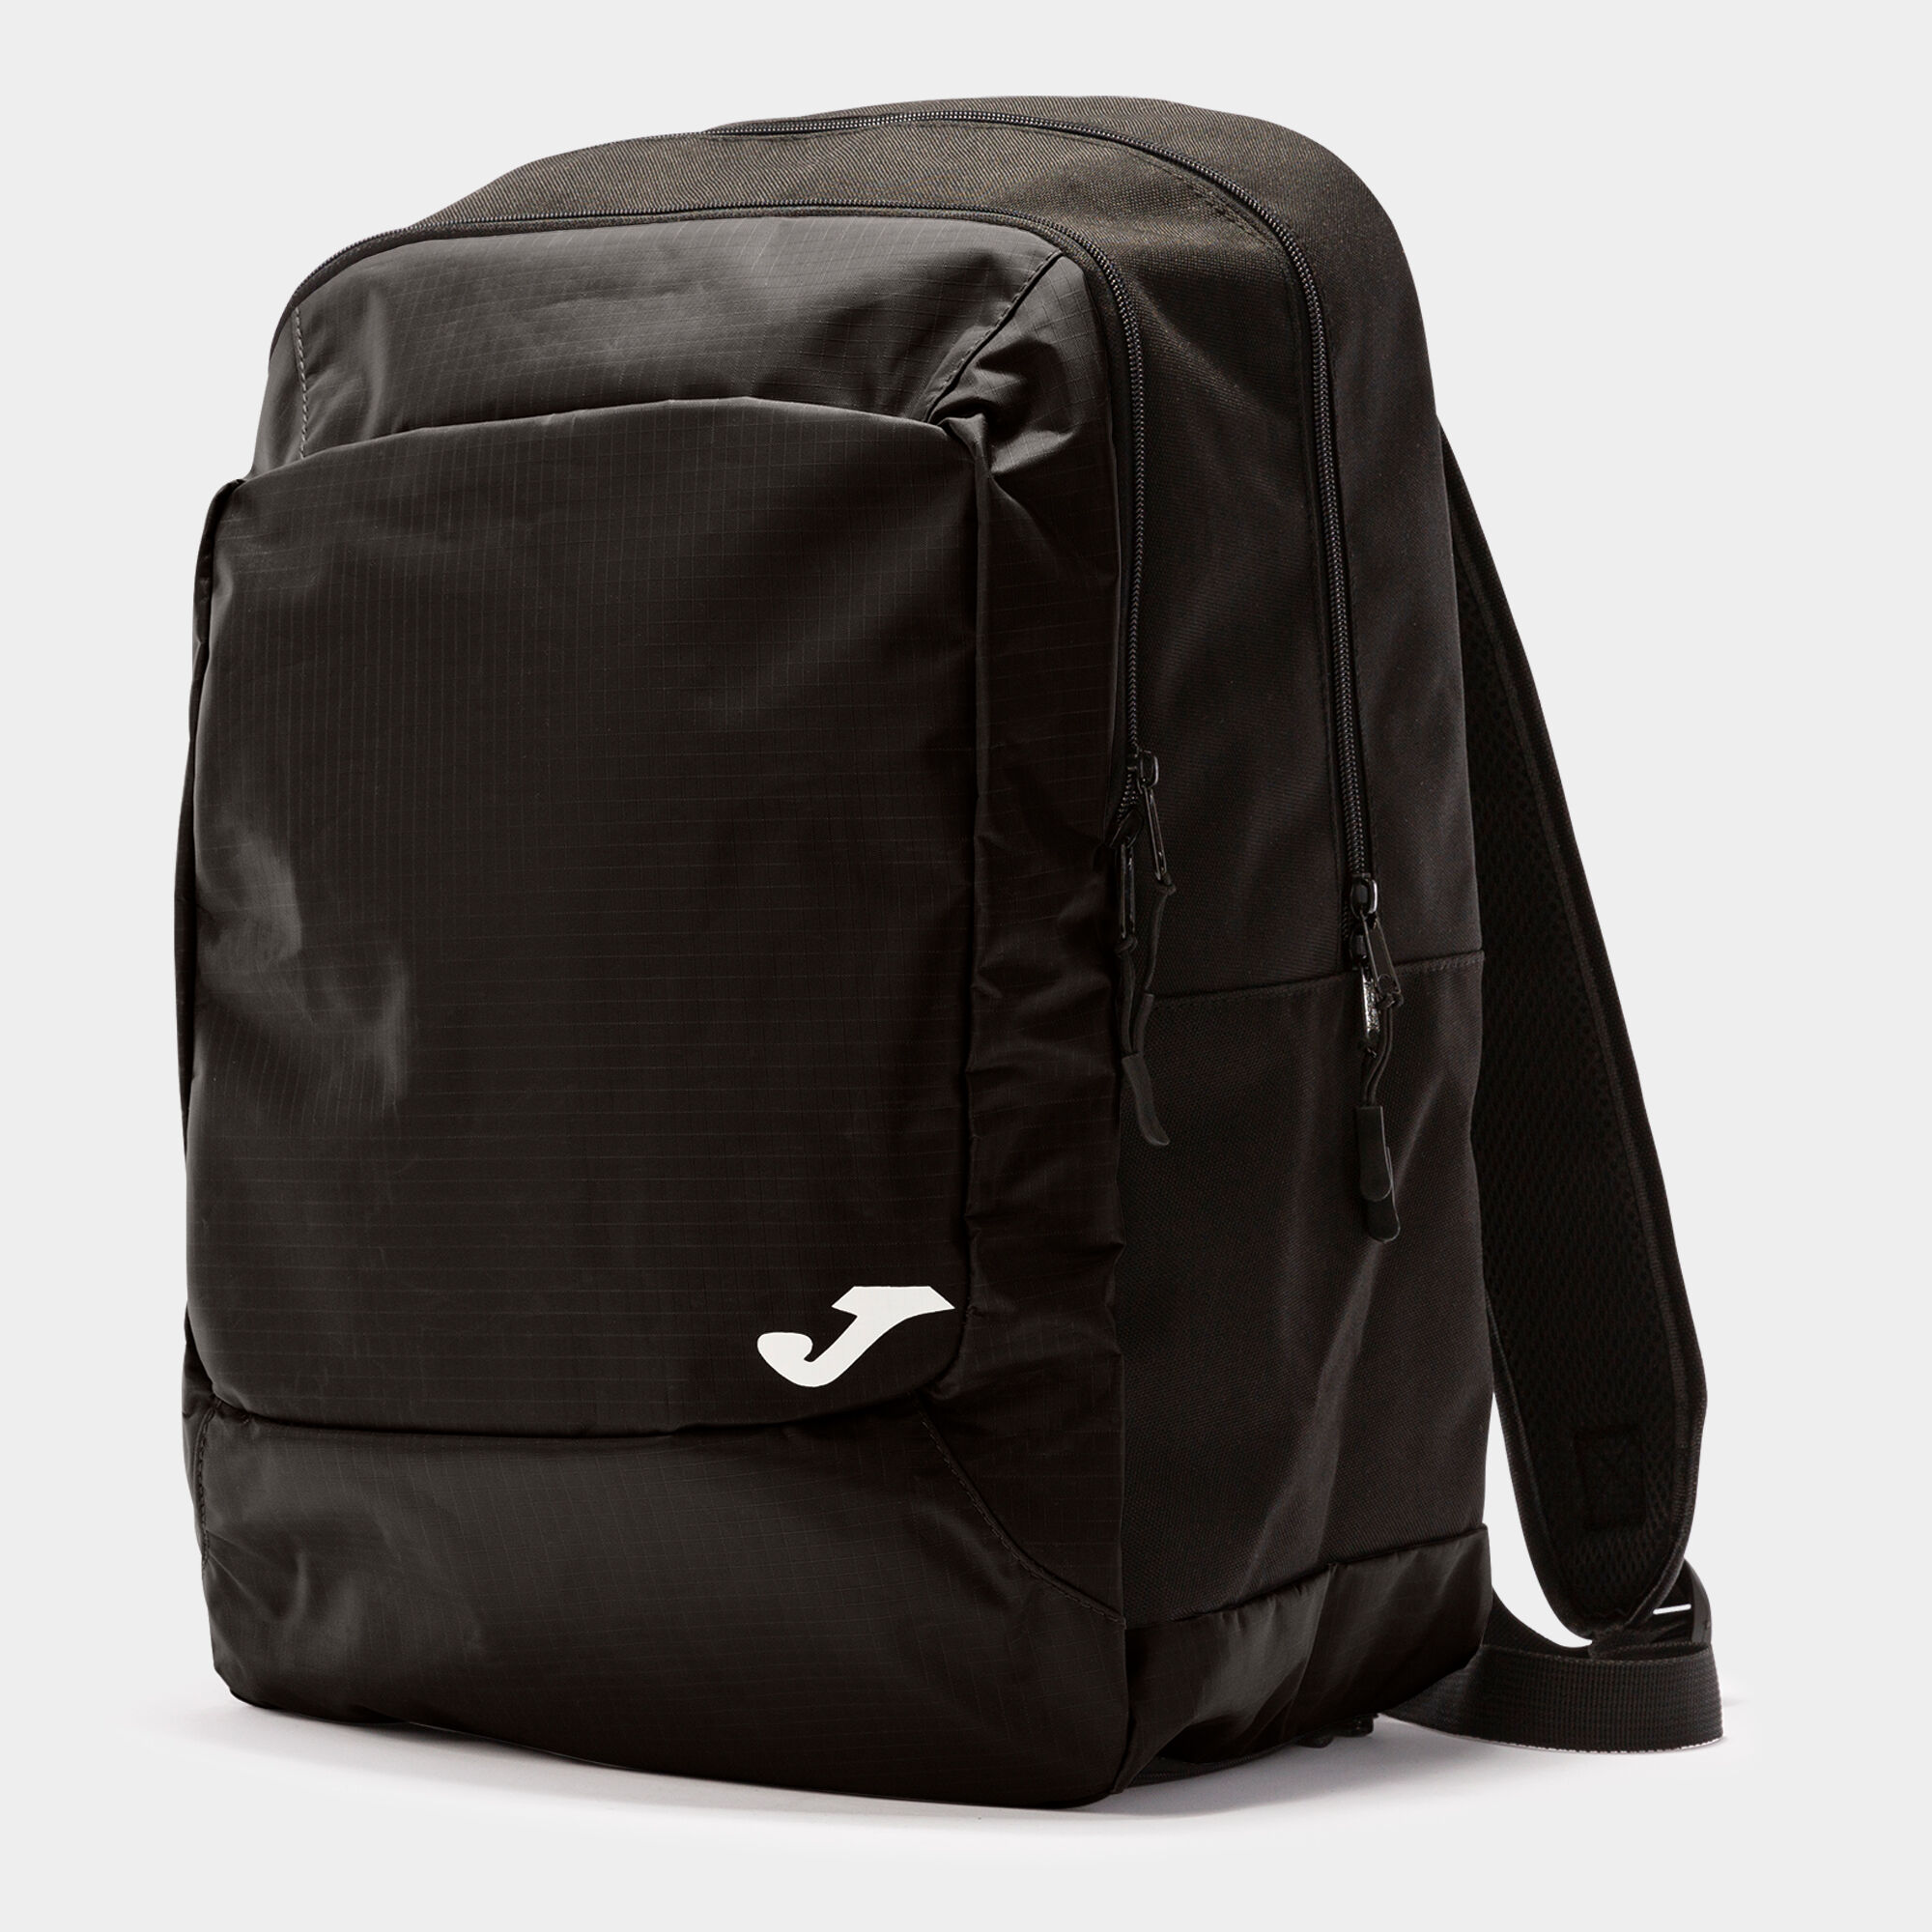 Backpack - shoe bag Team black